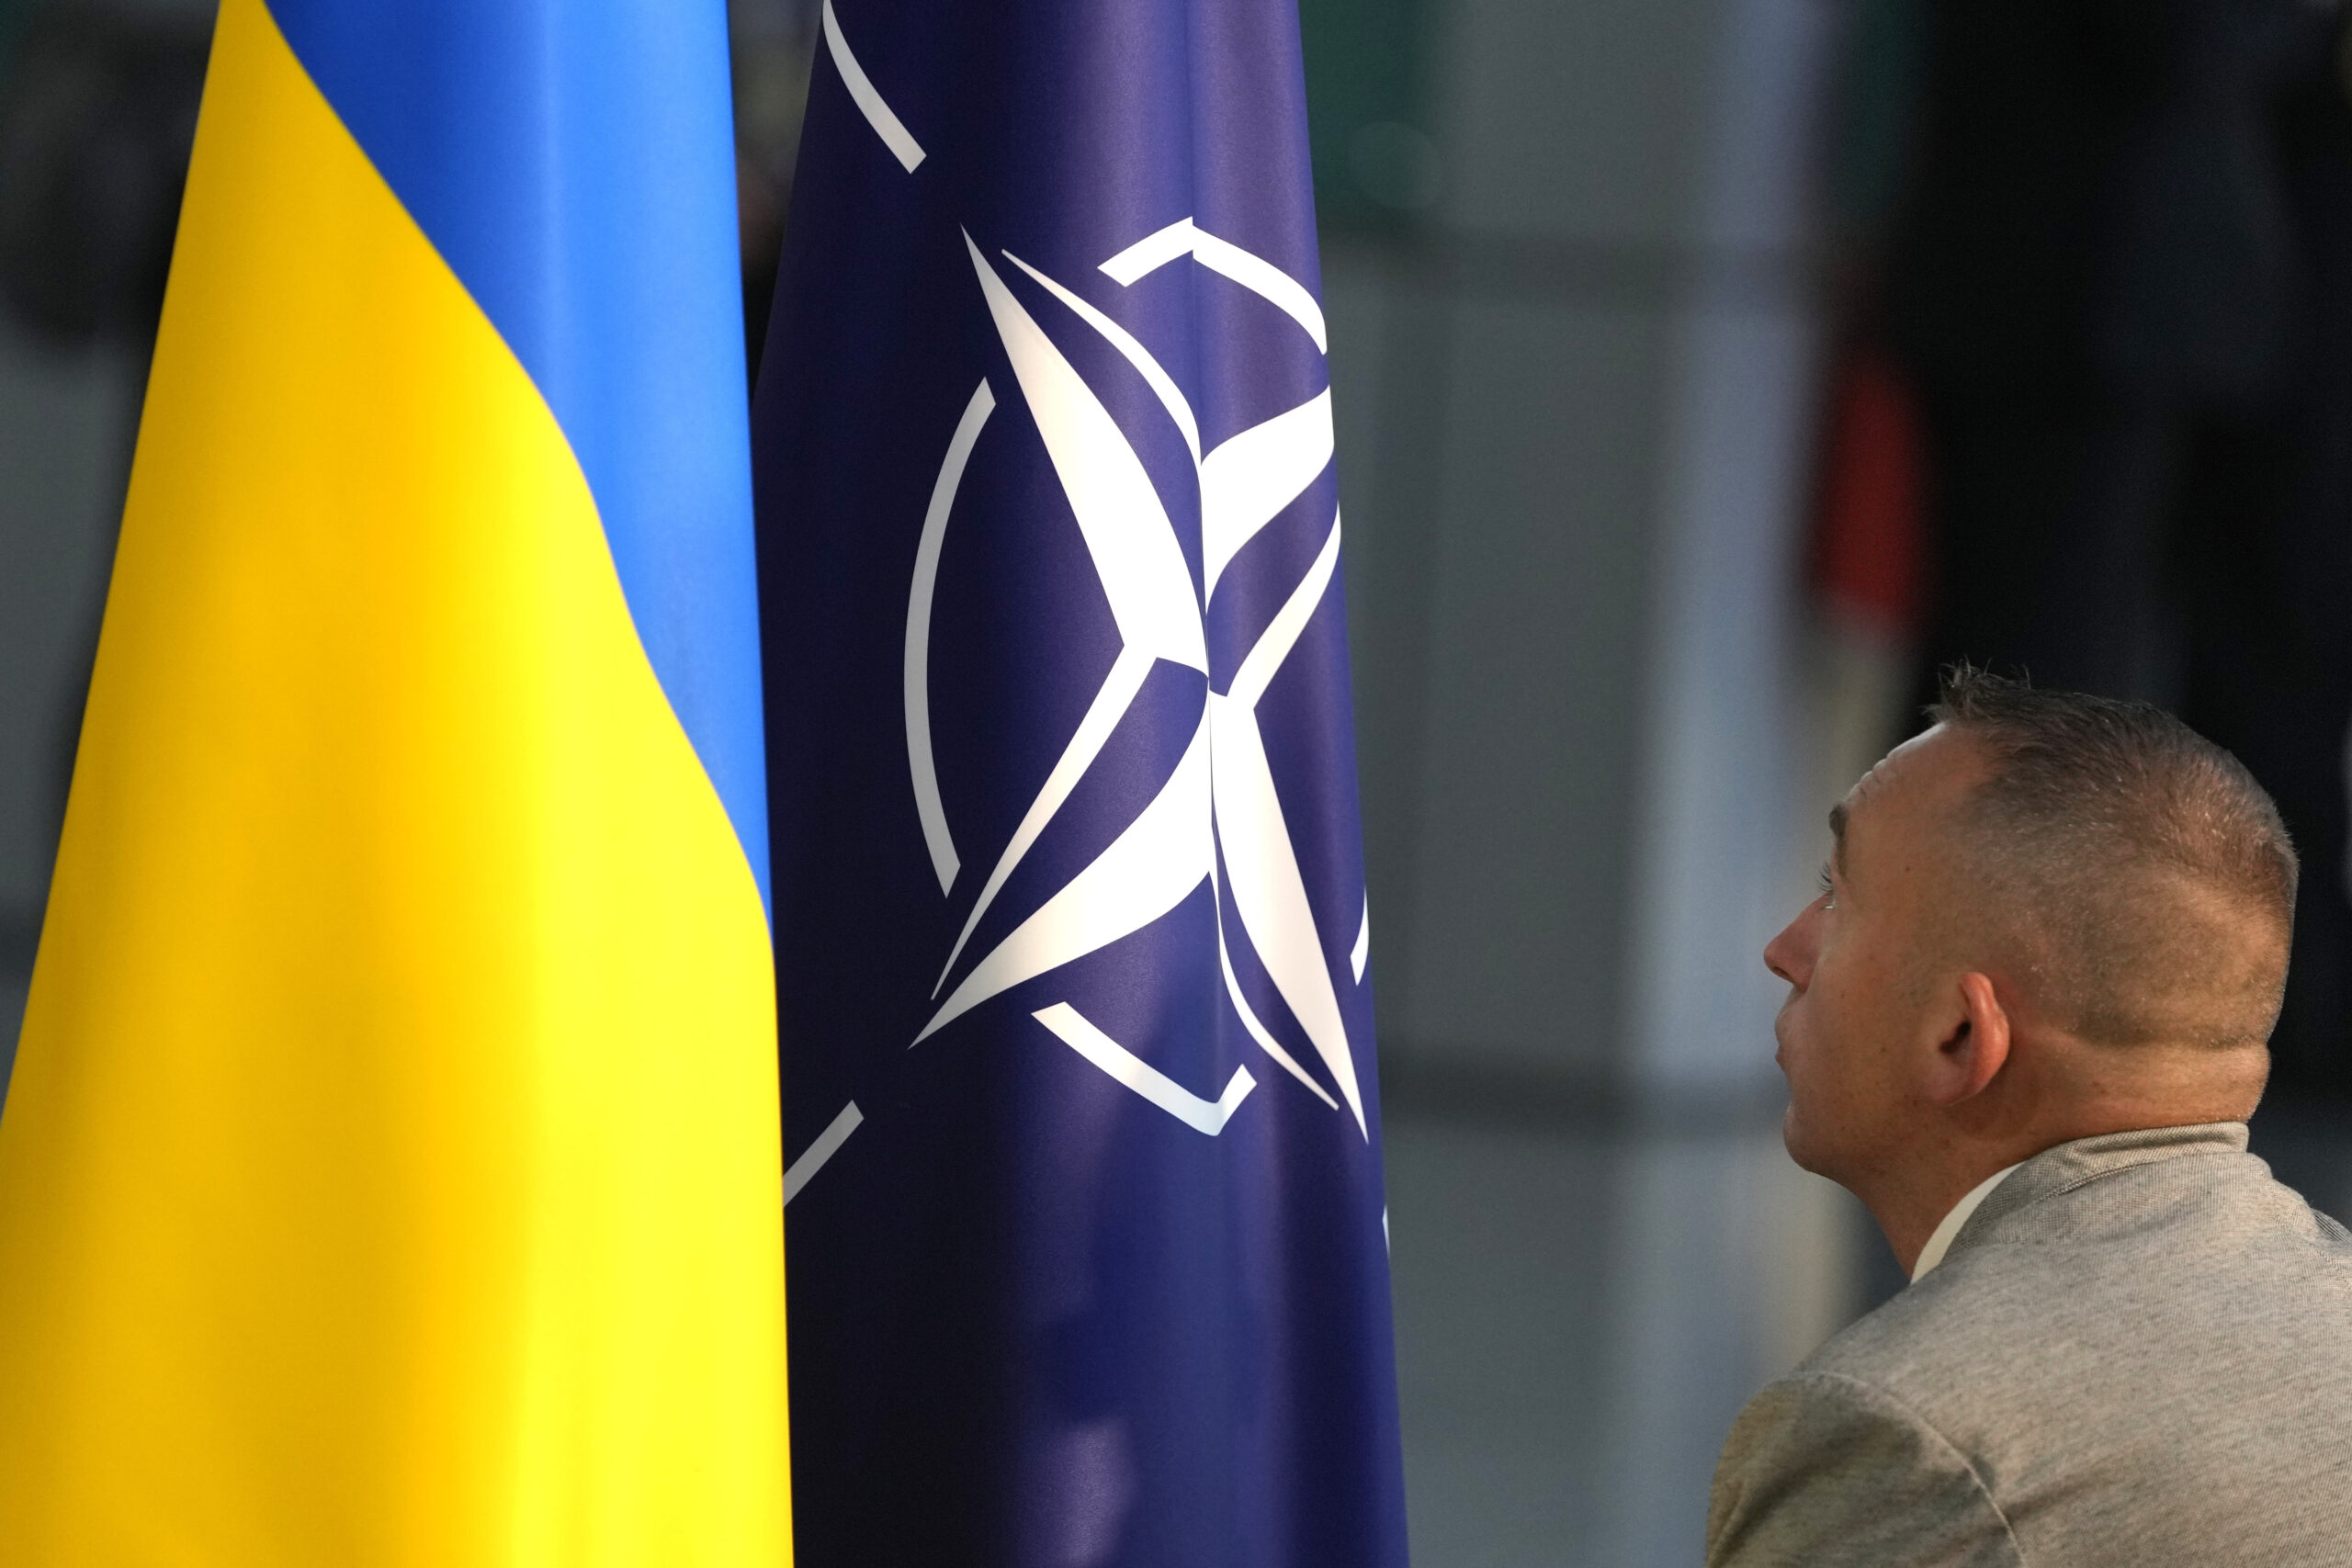 ΝΑΤΟ: Στην ανάγκη ενίσχυσης των συστημάτων αντιαεροπορικής άμυνας εστίασε το Κίεβο